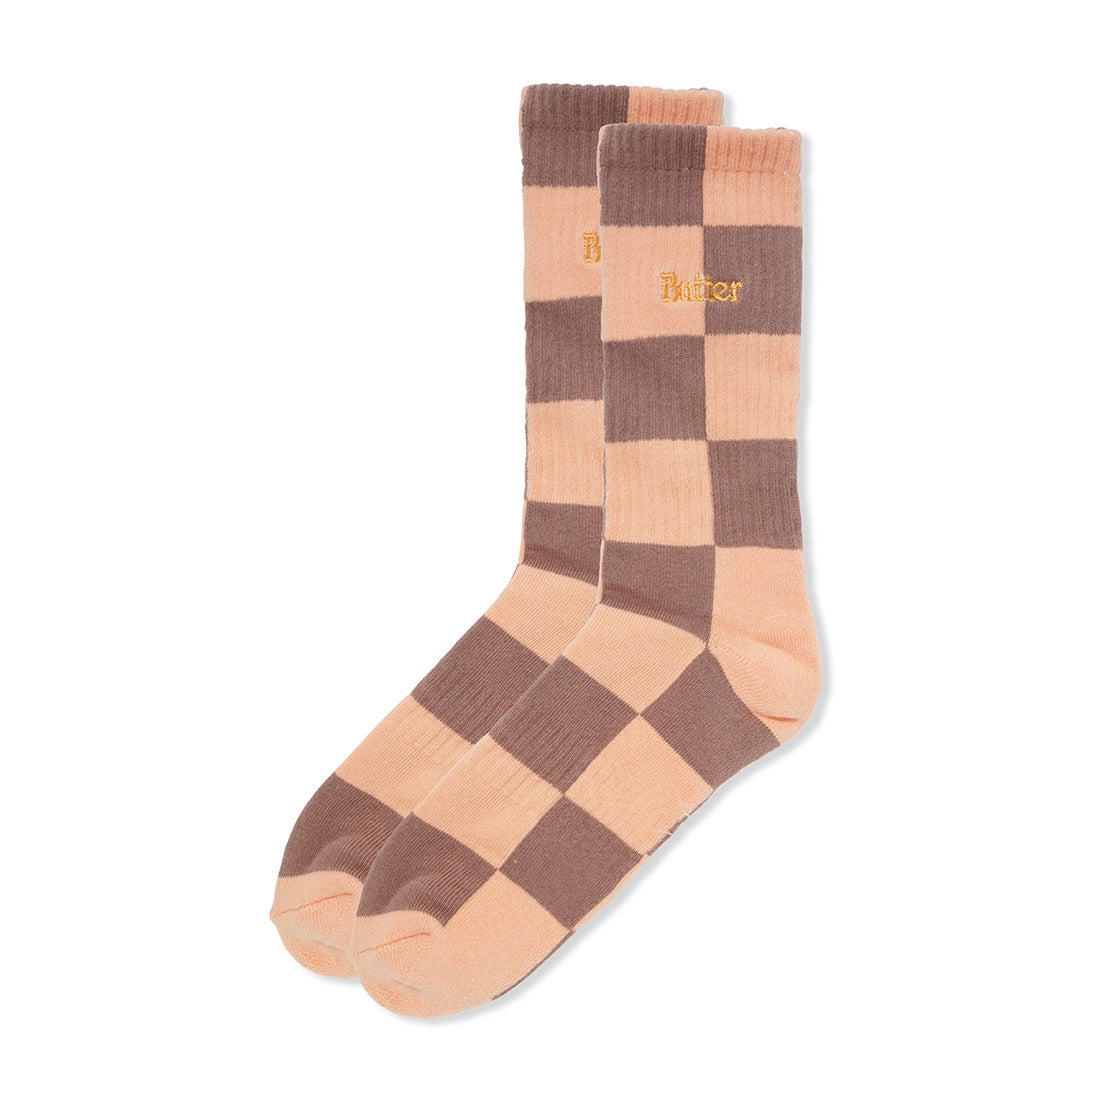 Checkered Socks Peach Brown